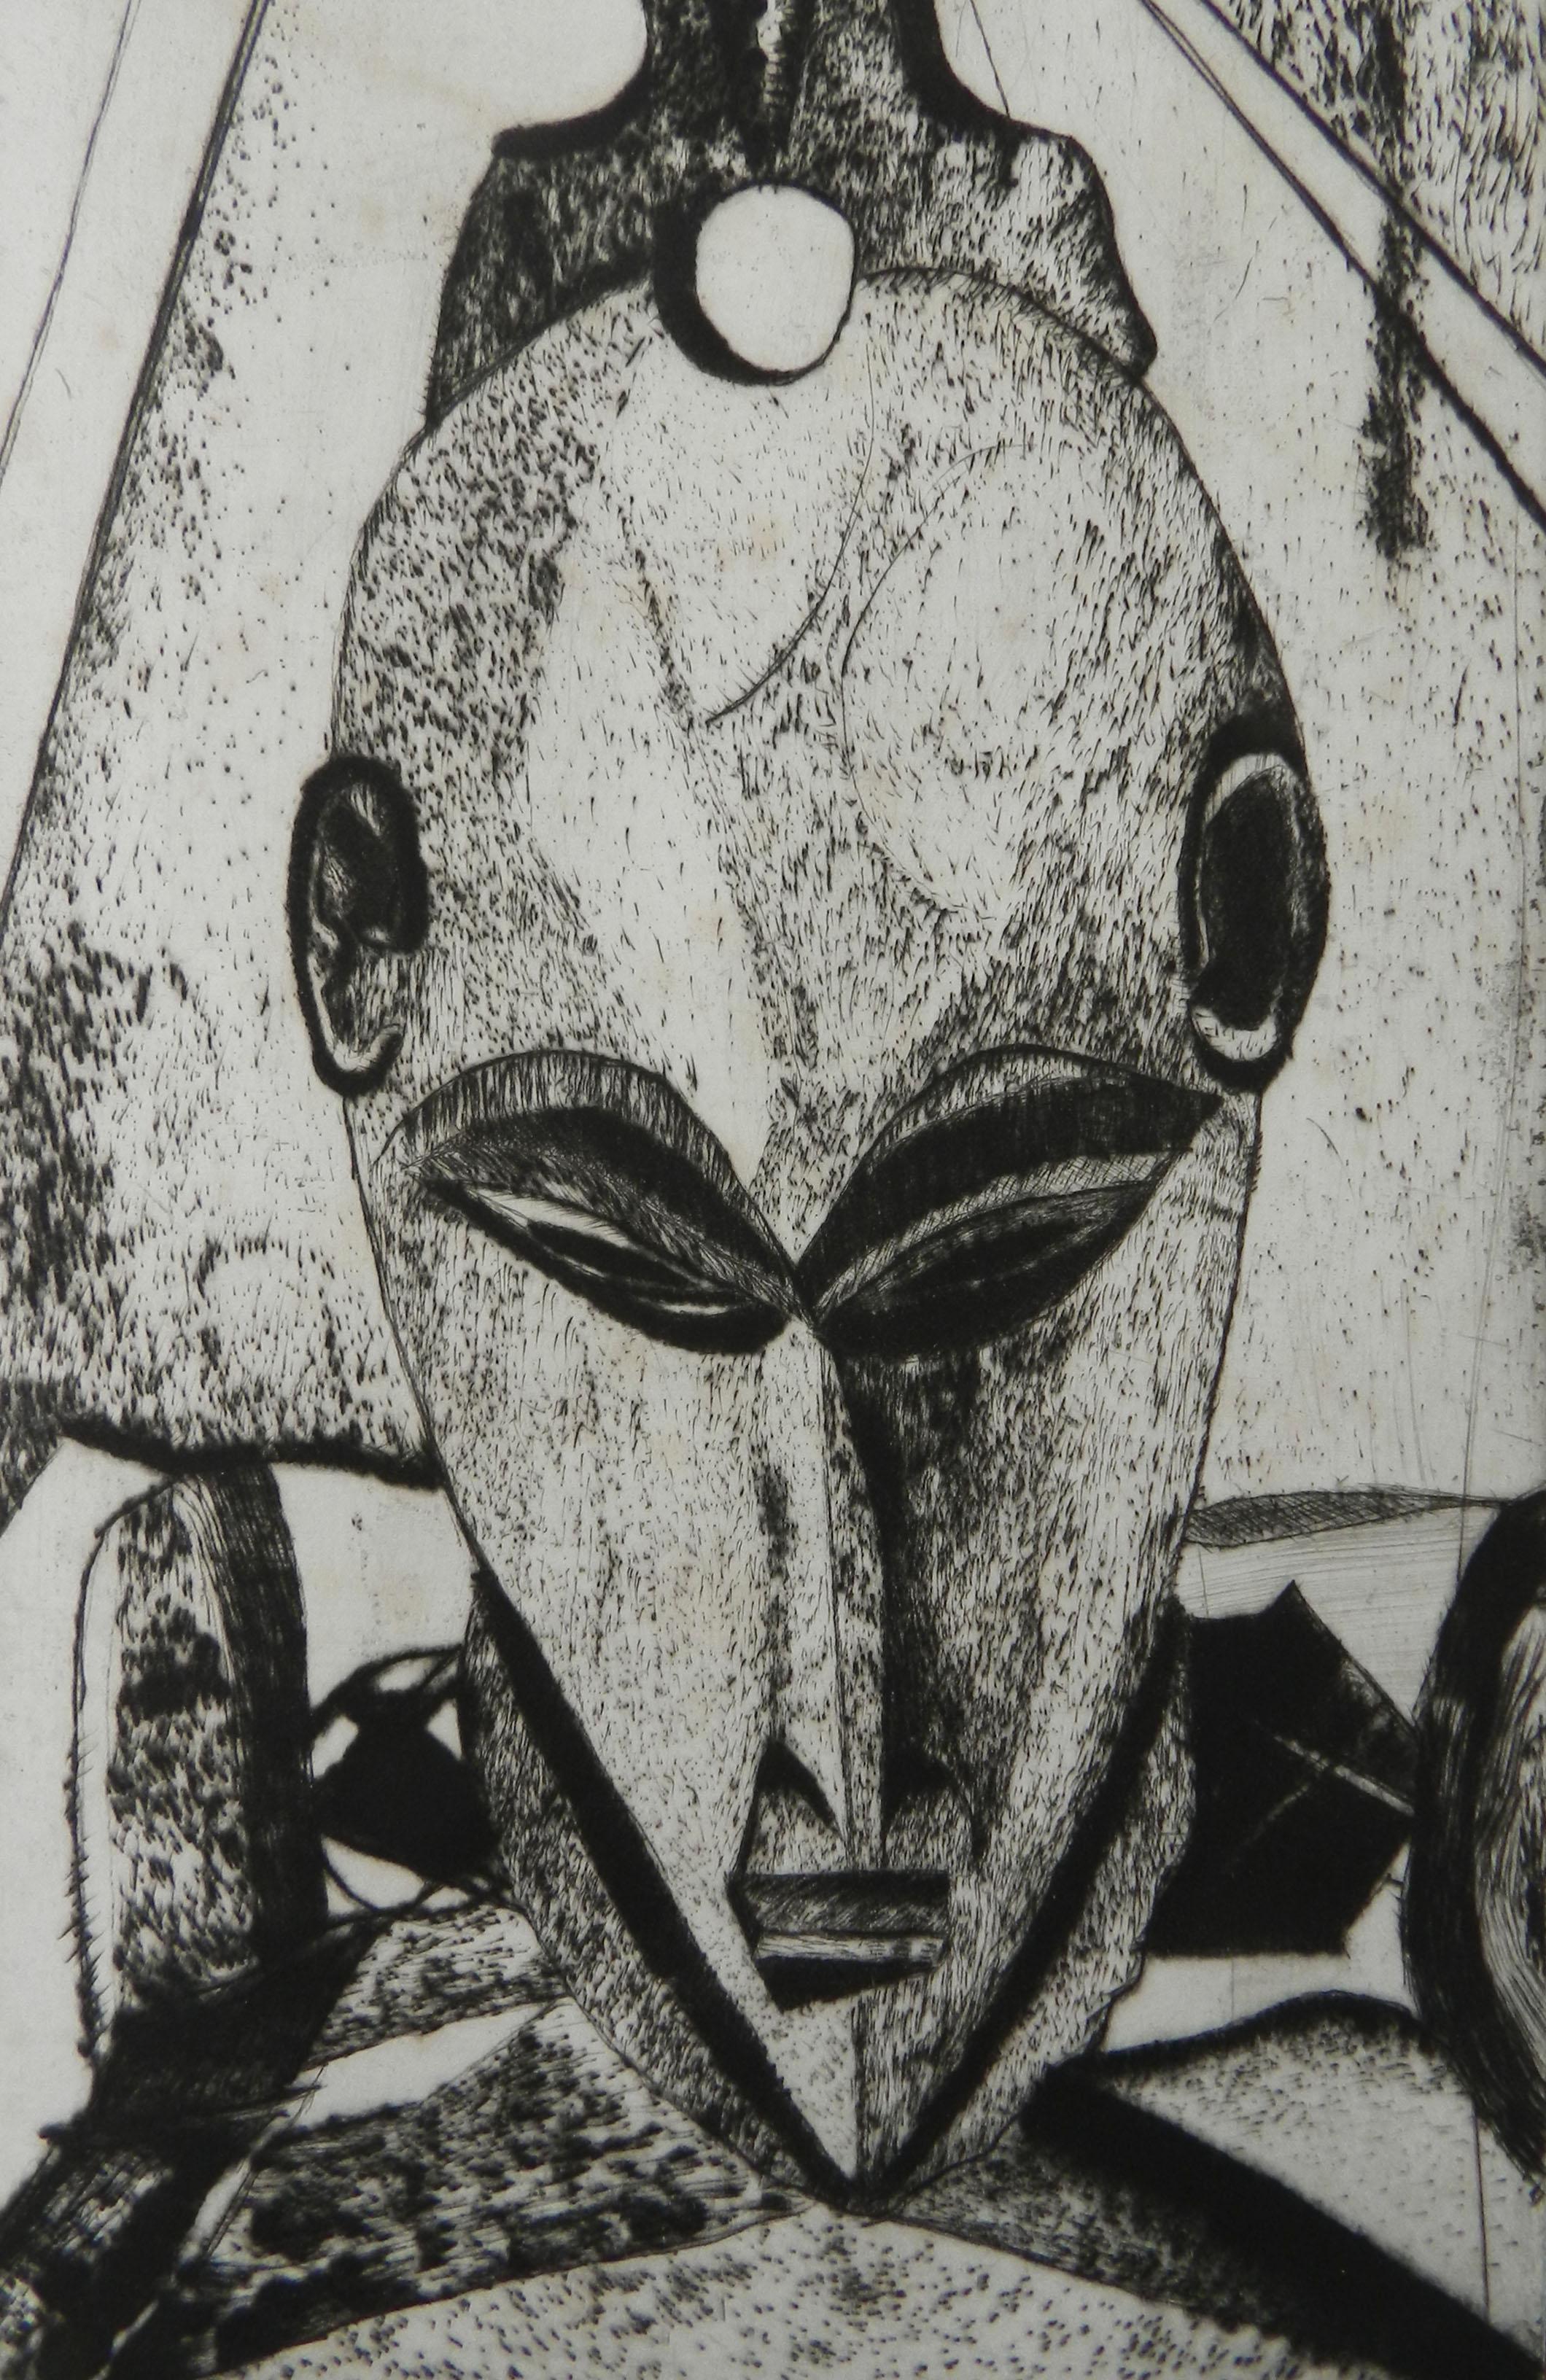 Afrikanische Maske Lithographie von Französisch 20. Jahrhundert unterzeichnet
Limitierte Auflage, dies ist die Nummer 4 von 20 und vom Künstler signiert
In gutem Vintage-Zustand immer gerahmt mit nur allgemeine Anzeichen von Alterung nicht